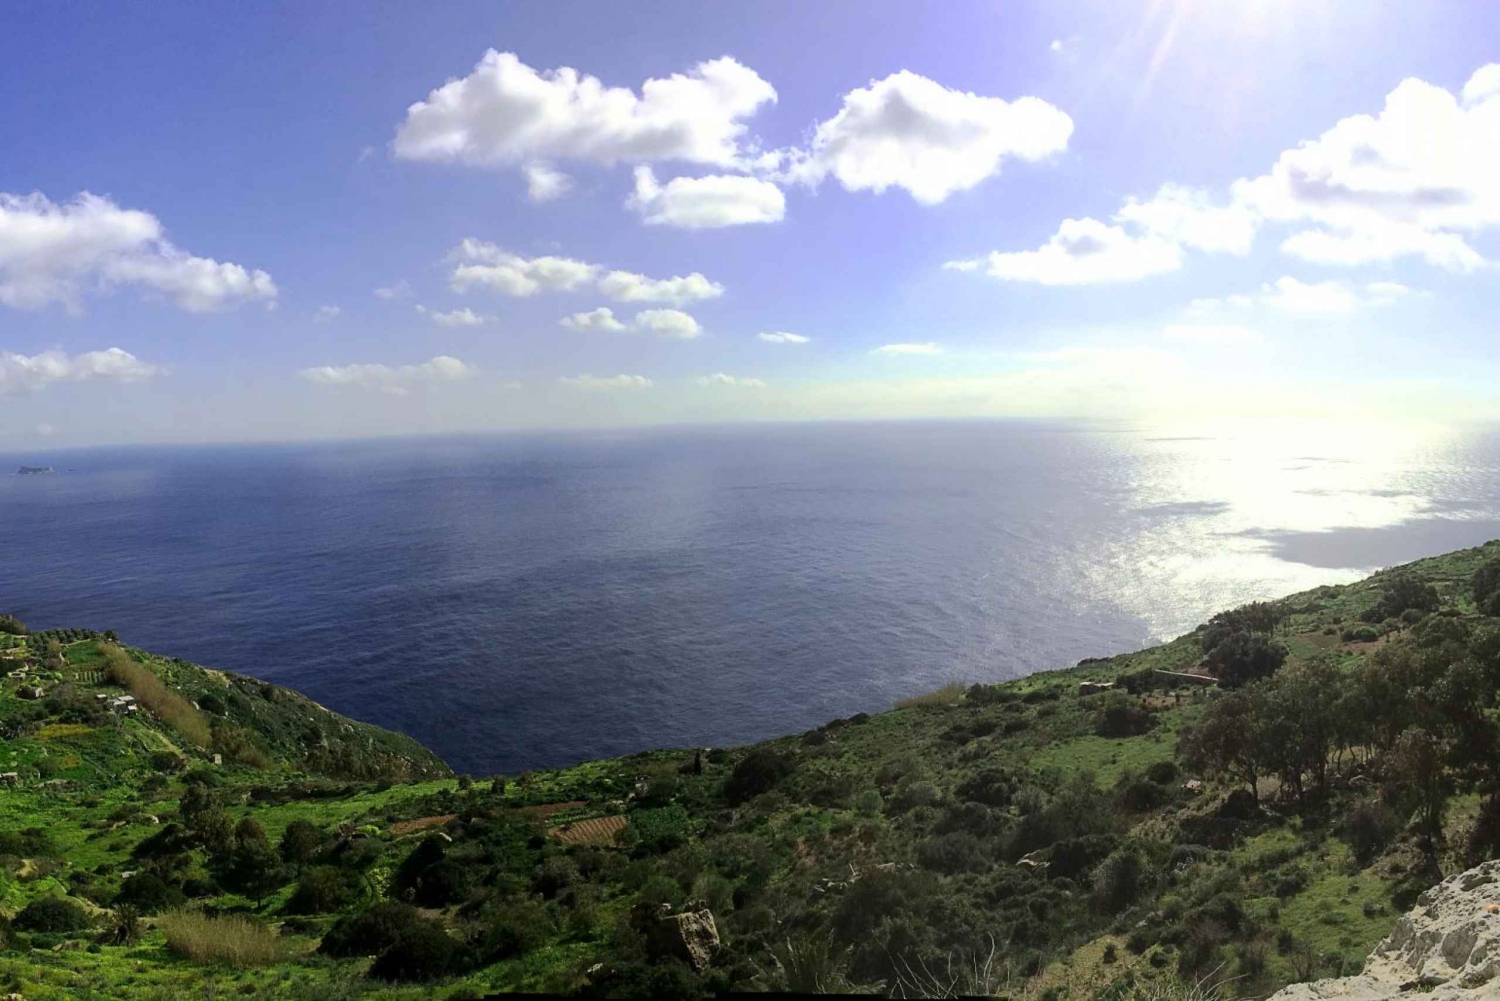 Malta: Dingli Cliffs & Buskett Gardens Segway Tour